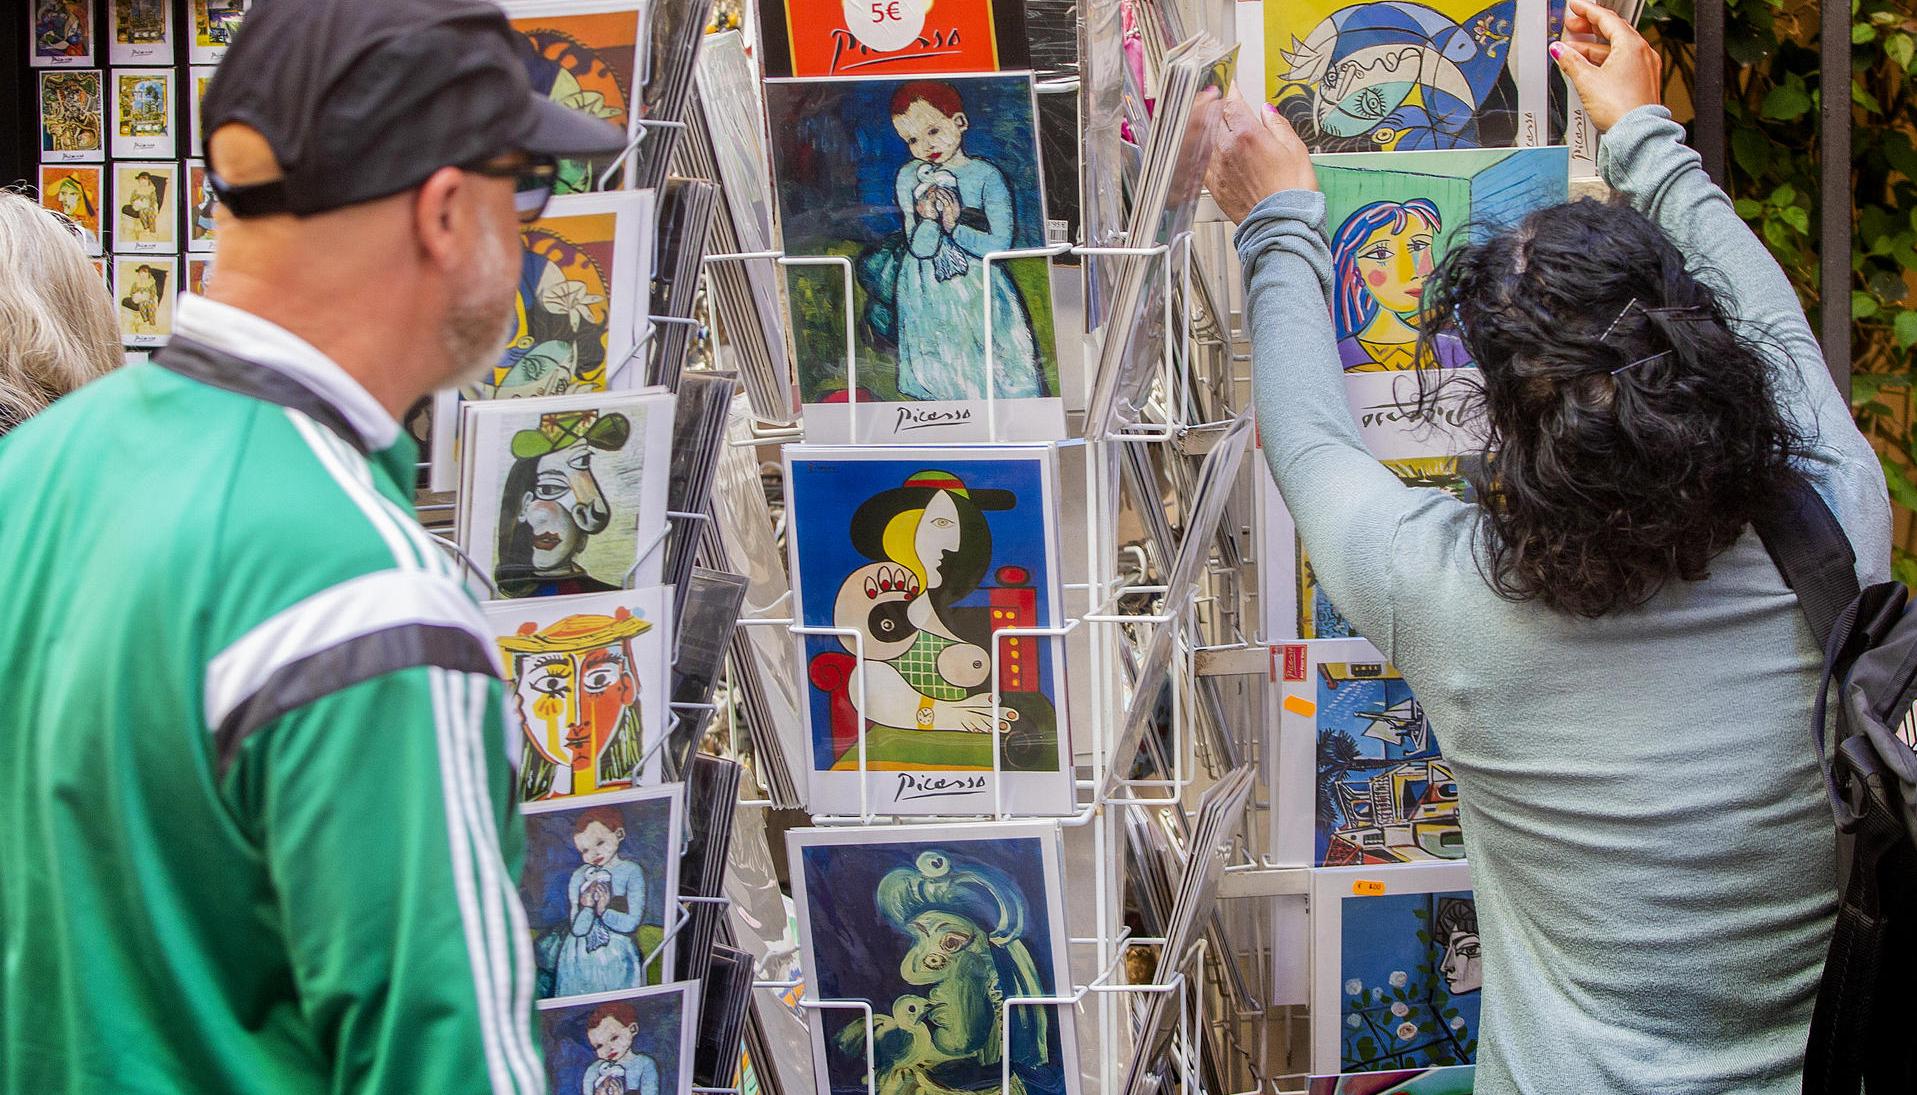  Turistas miran postales del artista español Pablo Ruiz Picasso.